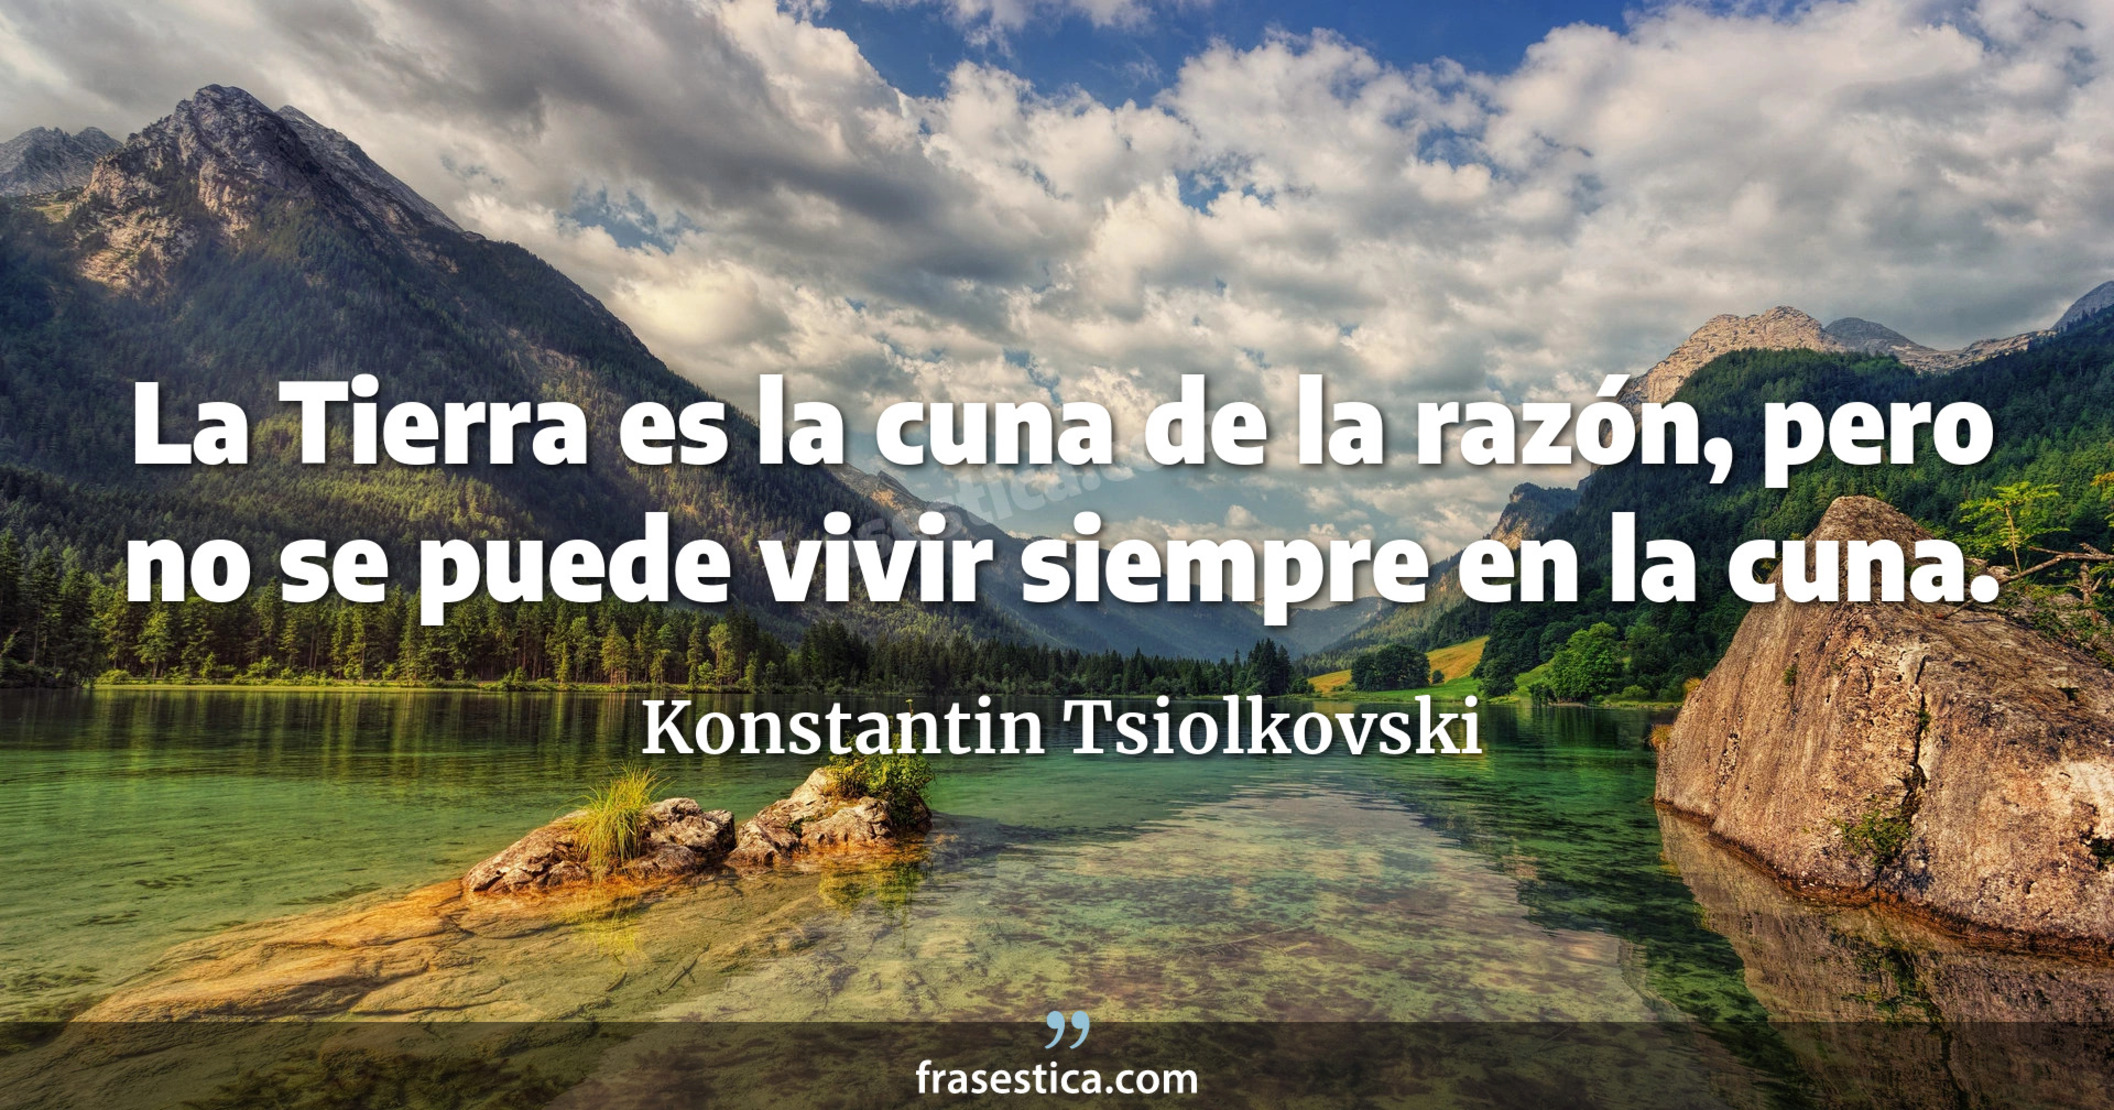 La Tierra es la cuna de la razón, pero no se puede vivir siempre en la cuna. - Konstantin Tsiolkovski